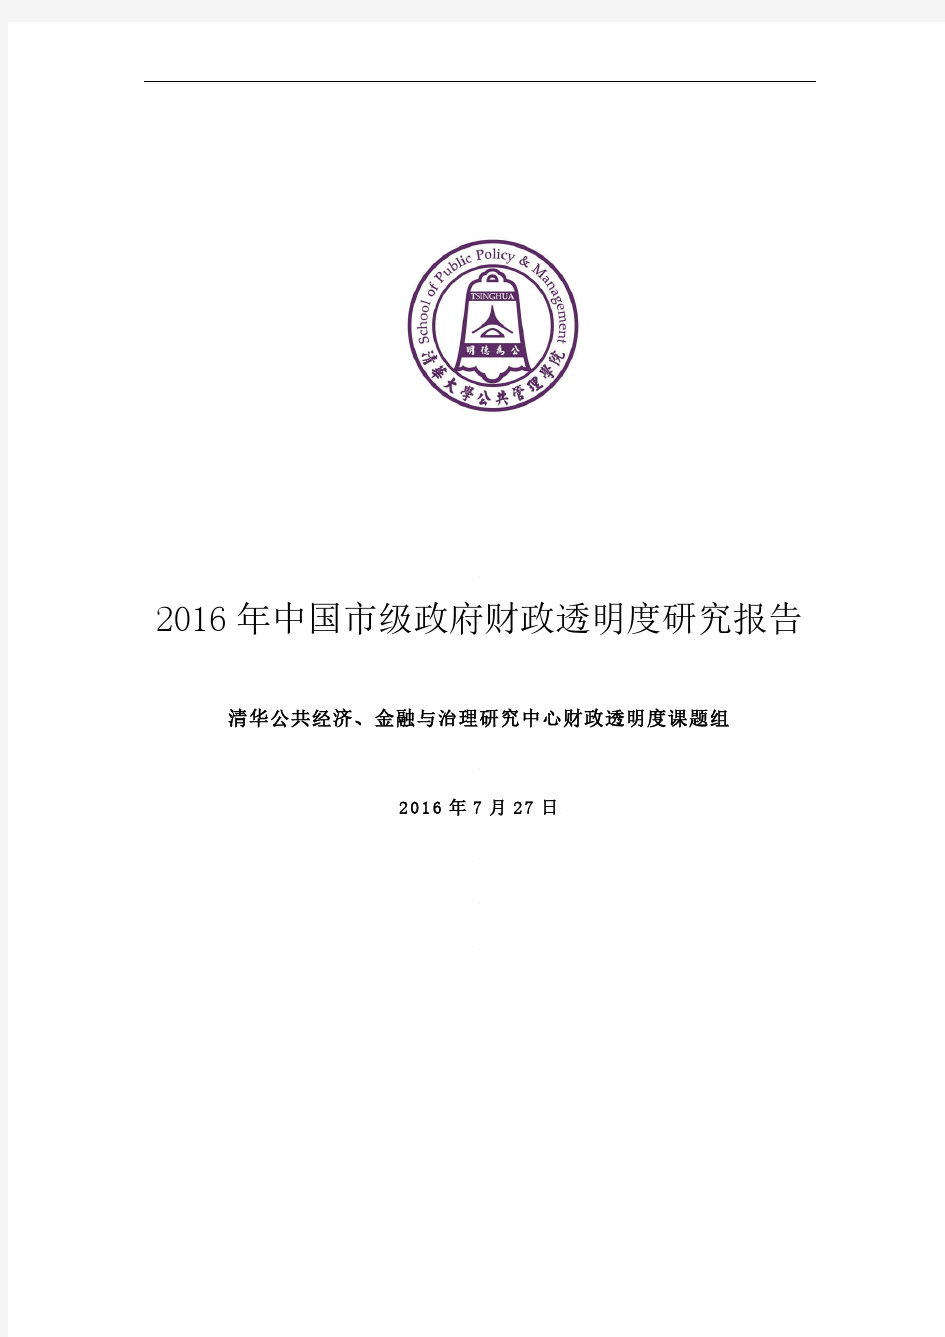 清华大学2016年中国市级政府财政透明度研究报告